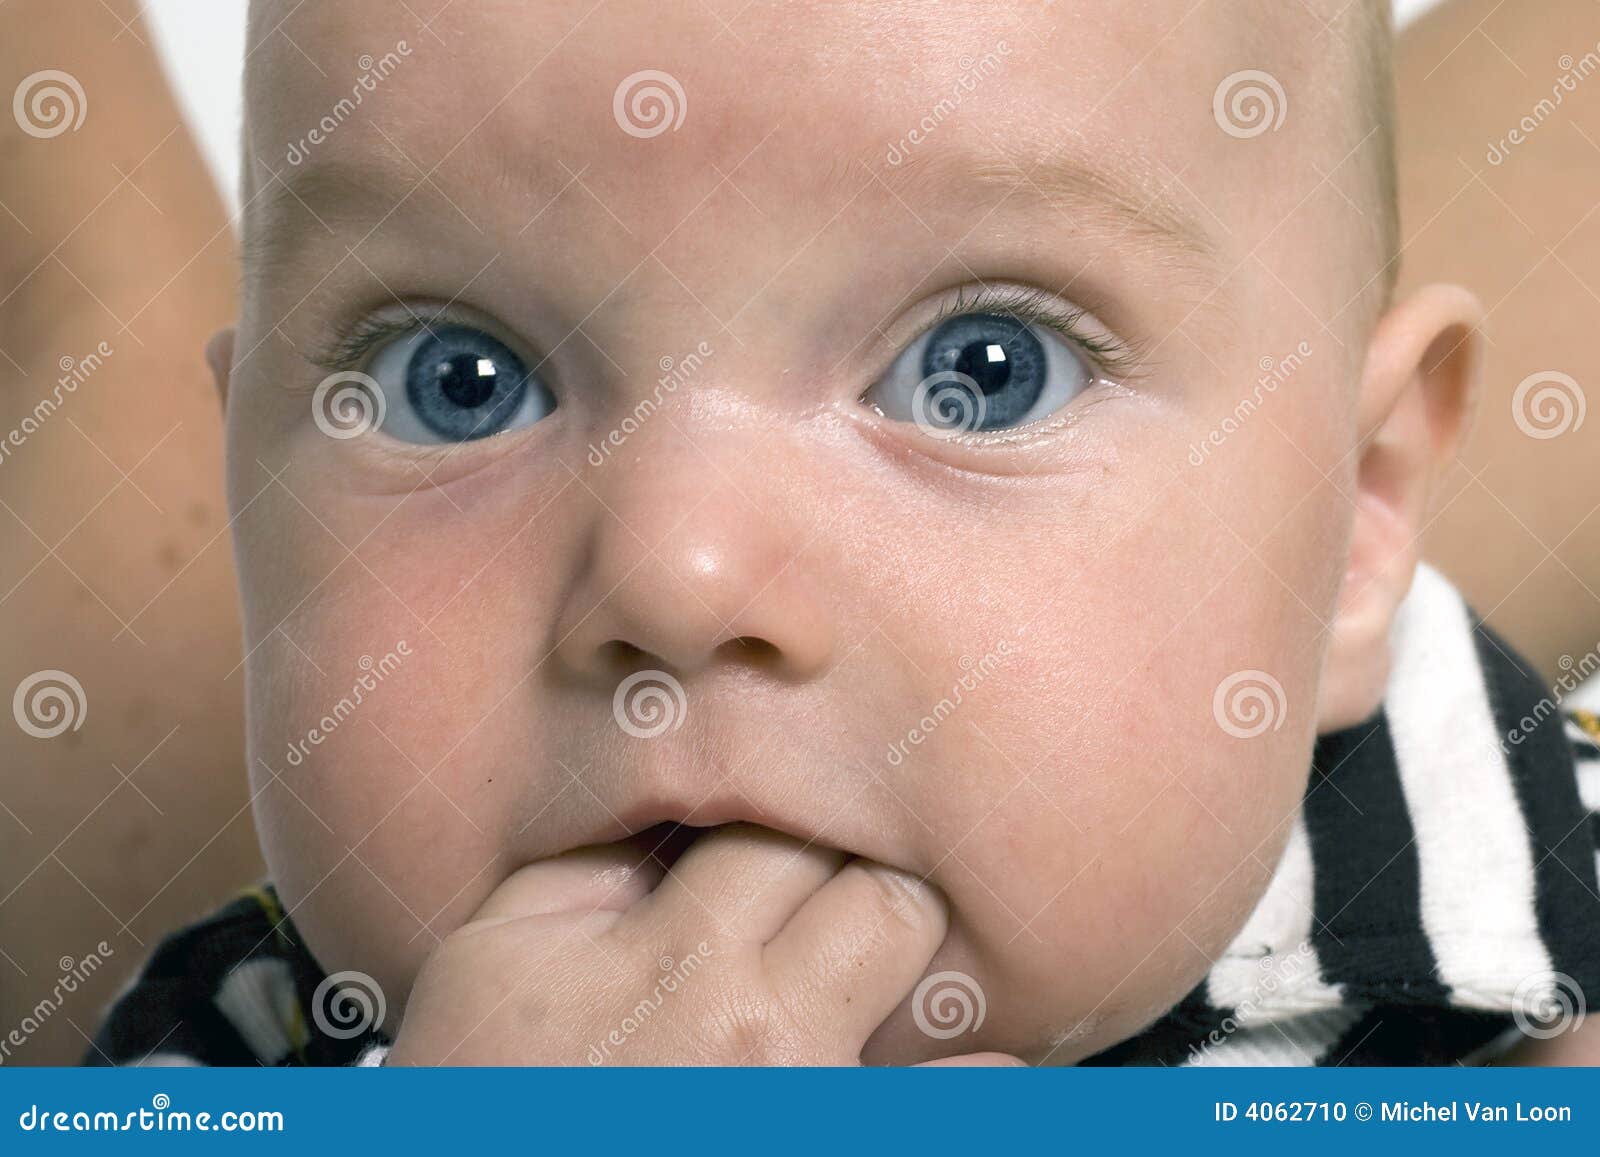 Baby Biting His Hand Stock Photo - Image: 4062710